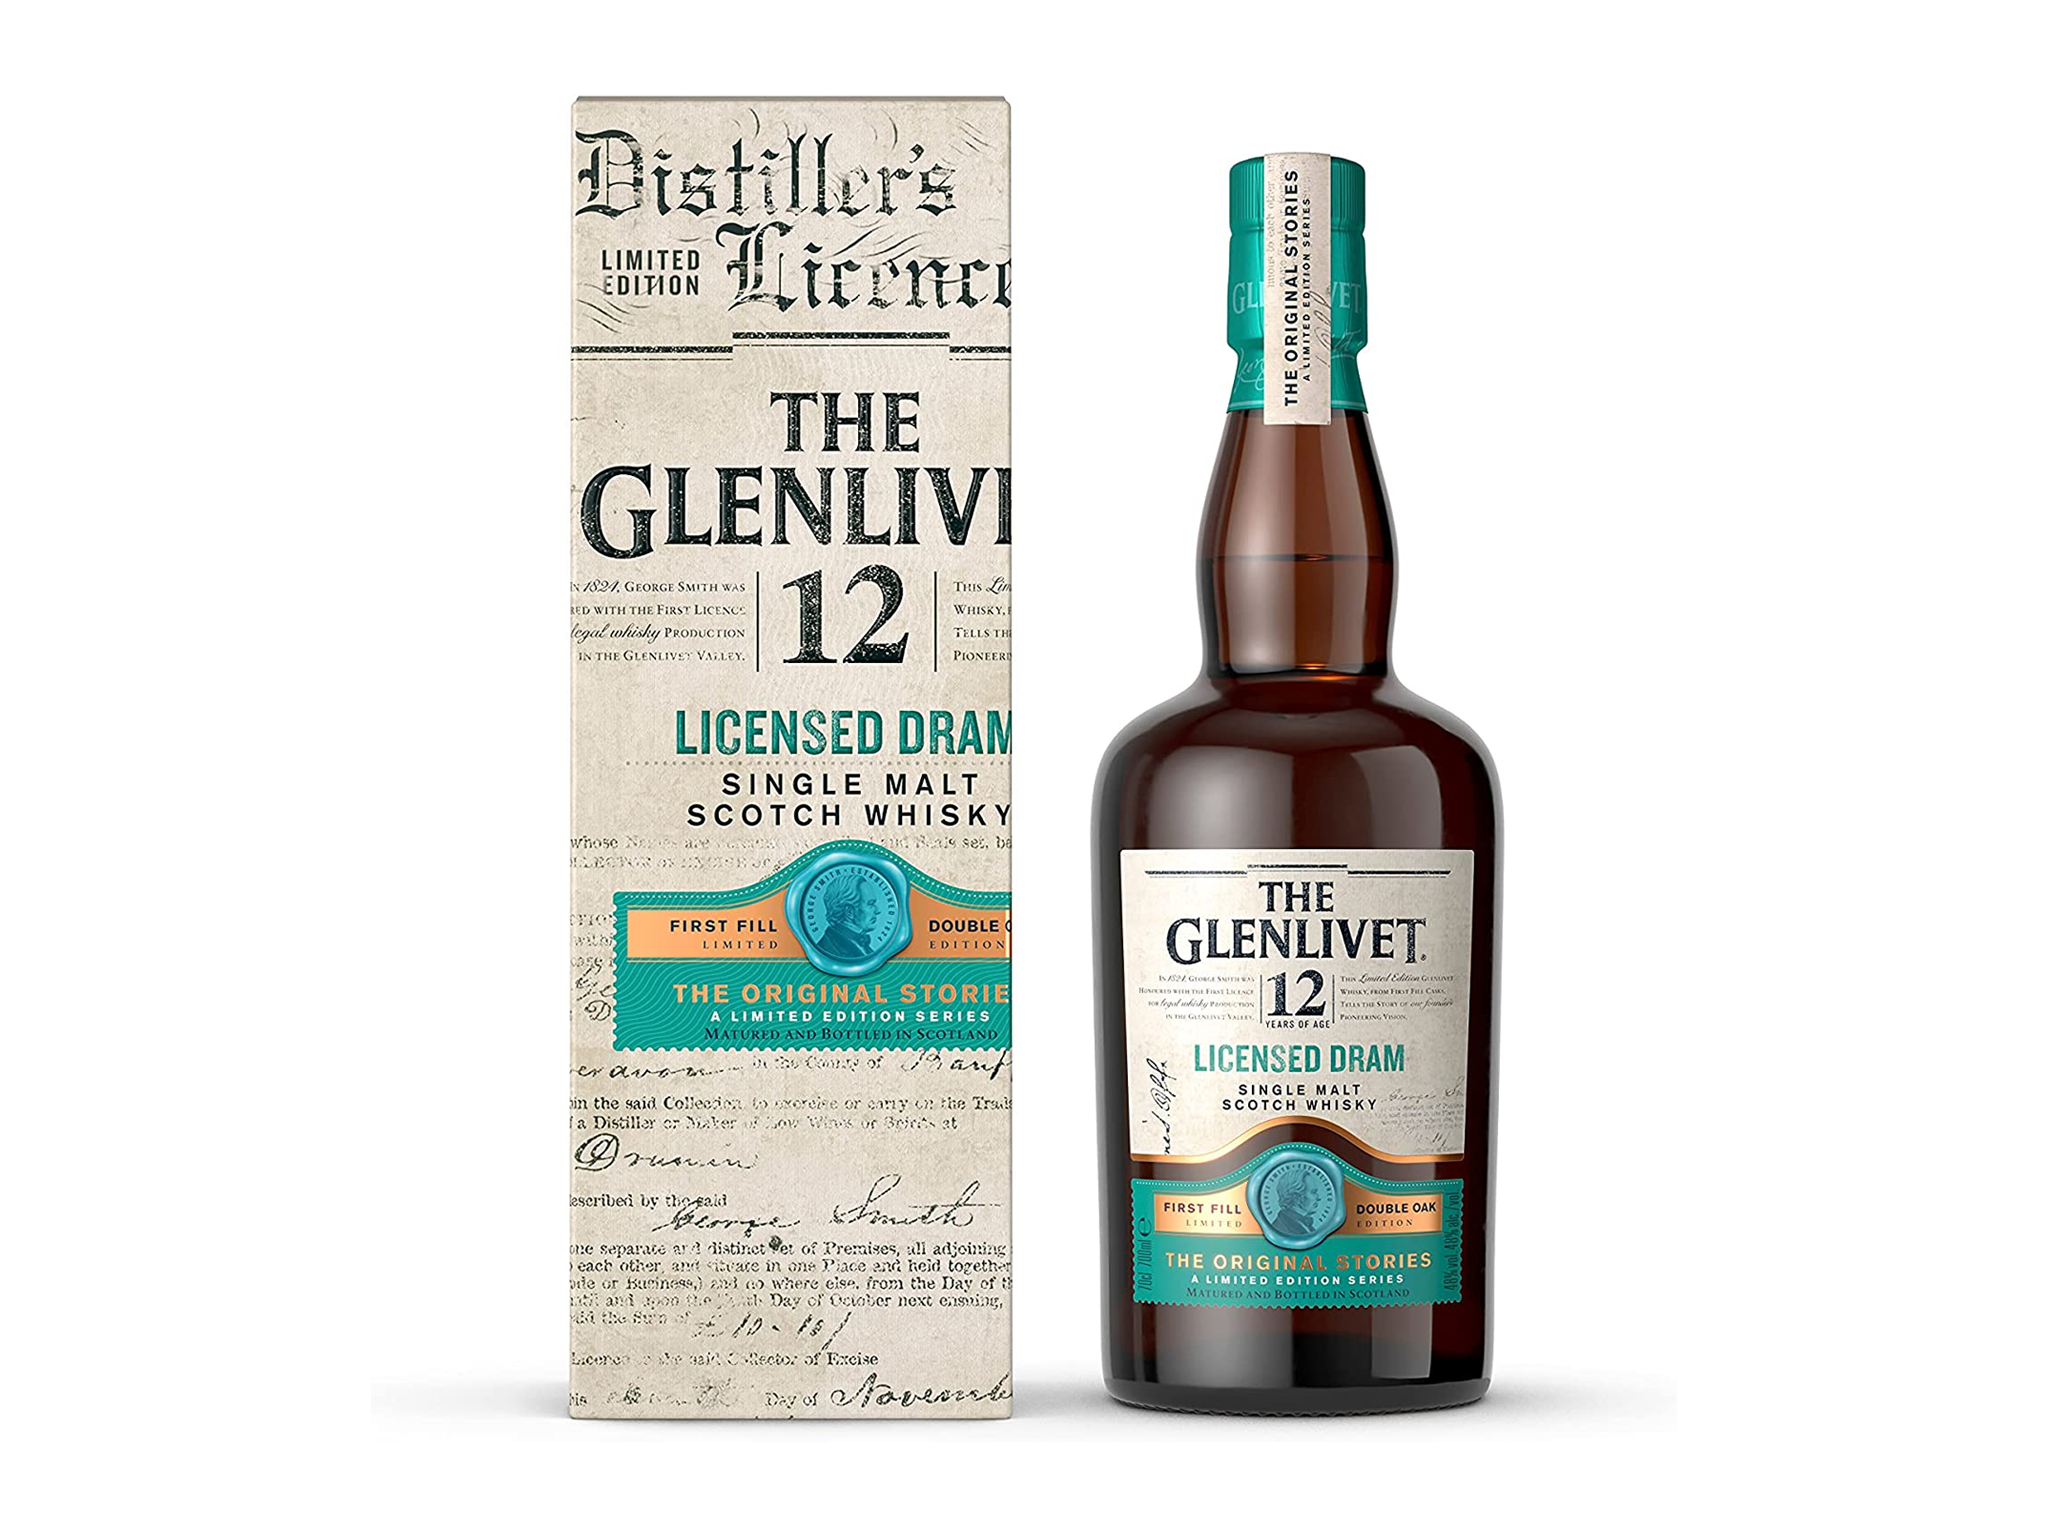 The Glenlivet 12 Year Old Licensed Dram Limited Edition Single Malt Whisky